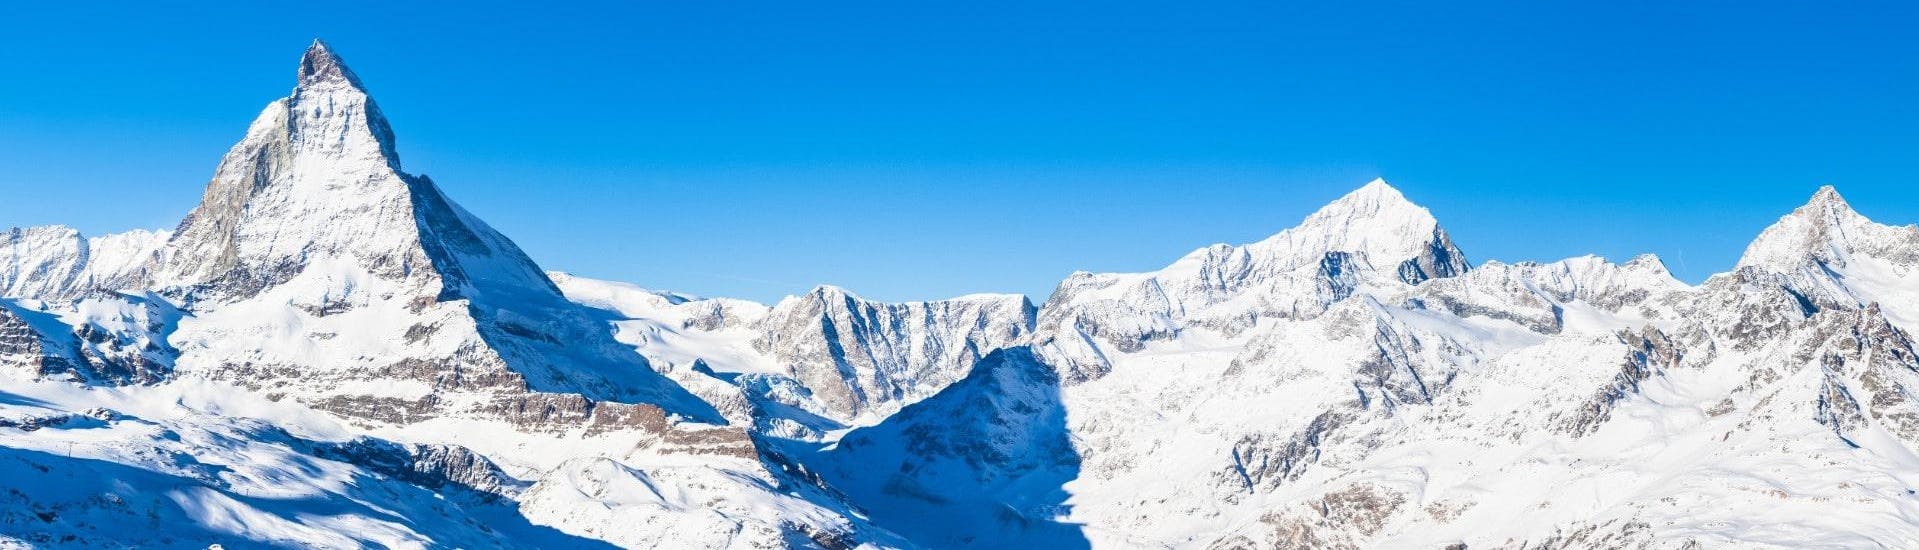 Ausblick auf die sonnige Berglandschaft beim Skifahren lernen mit den Skischulen in Zermatt.